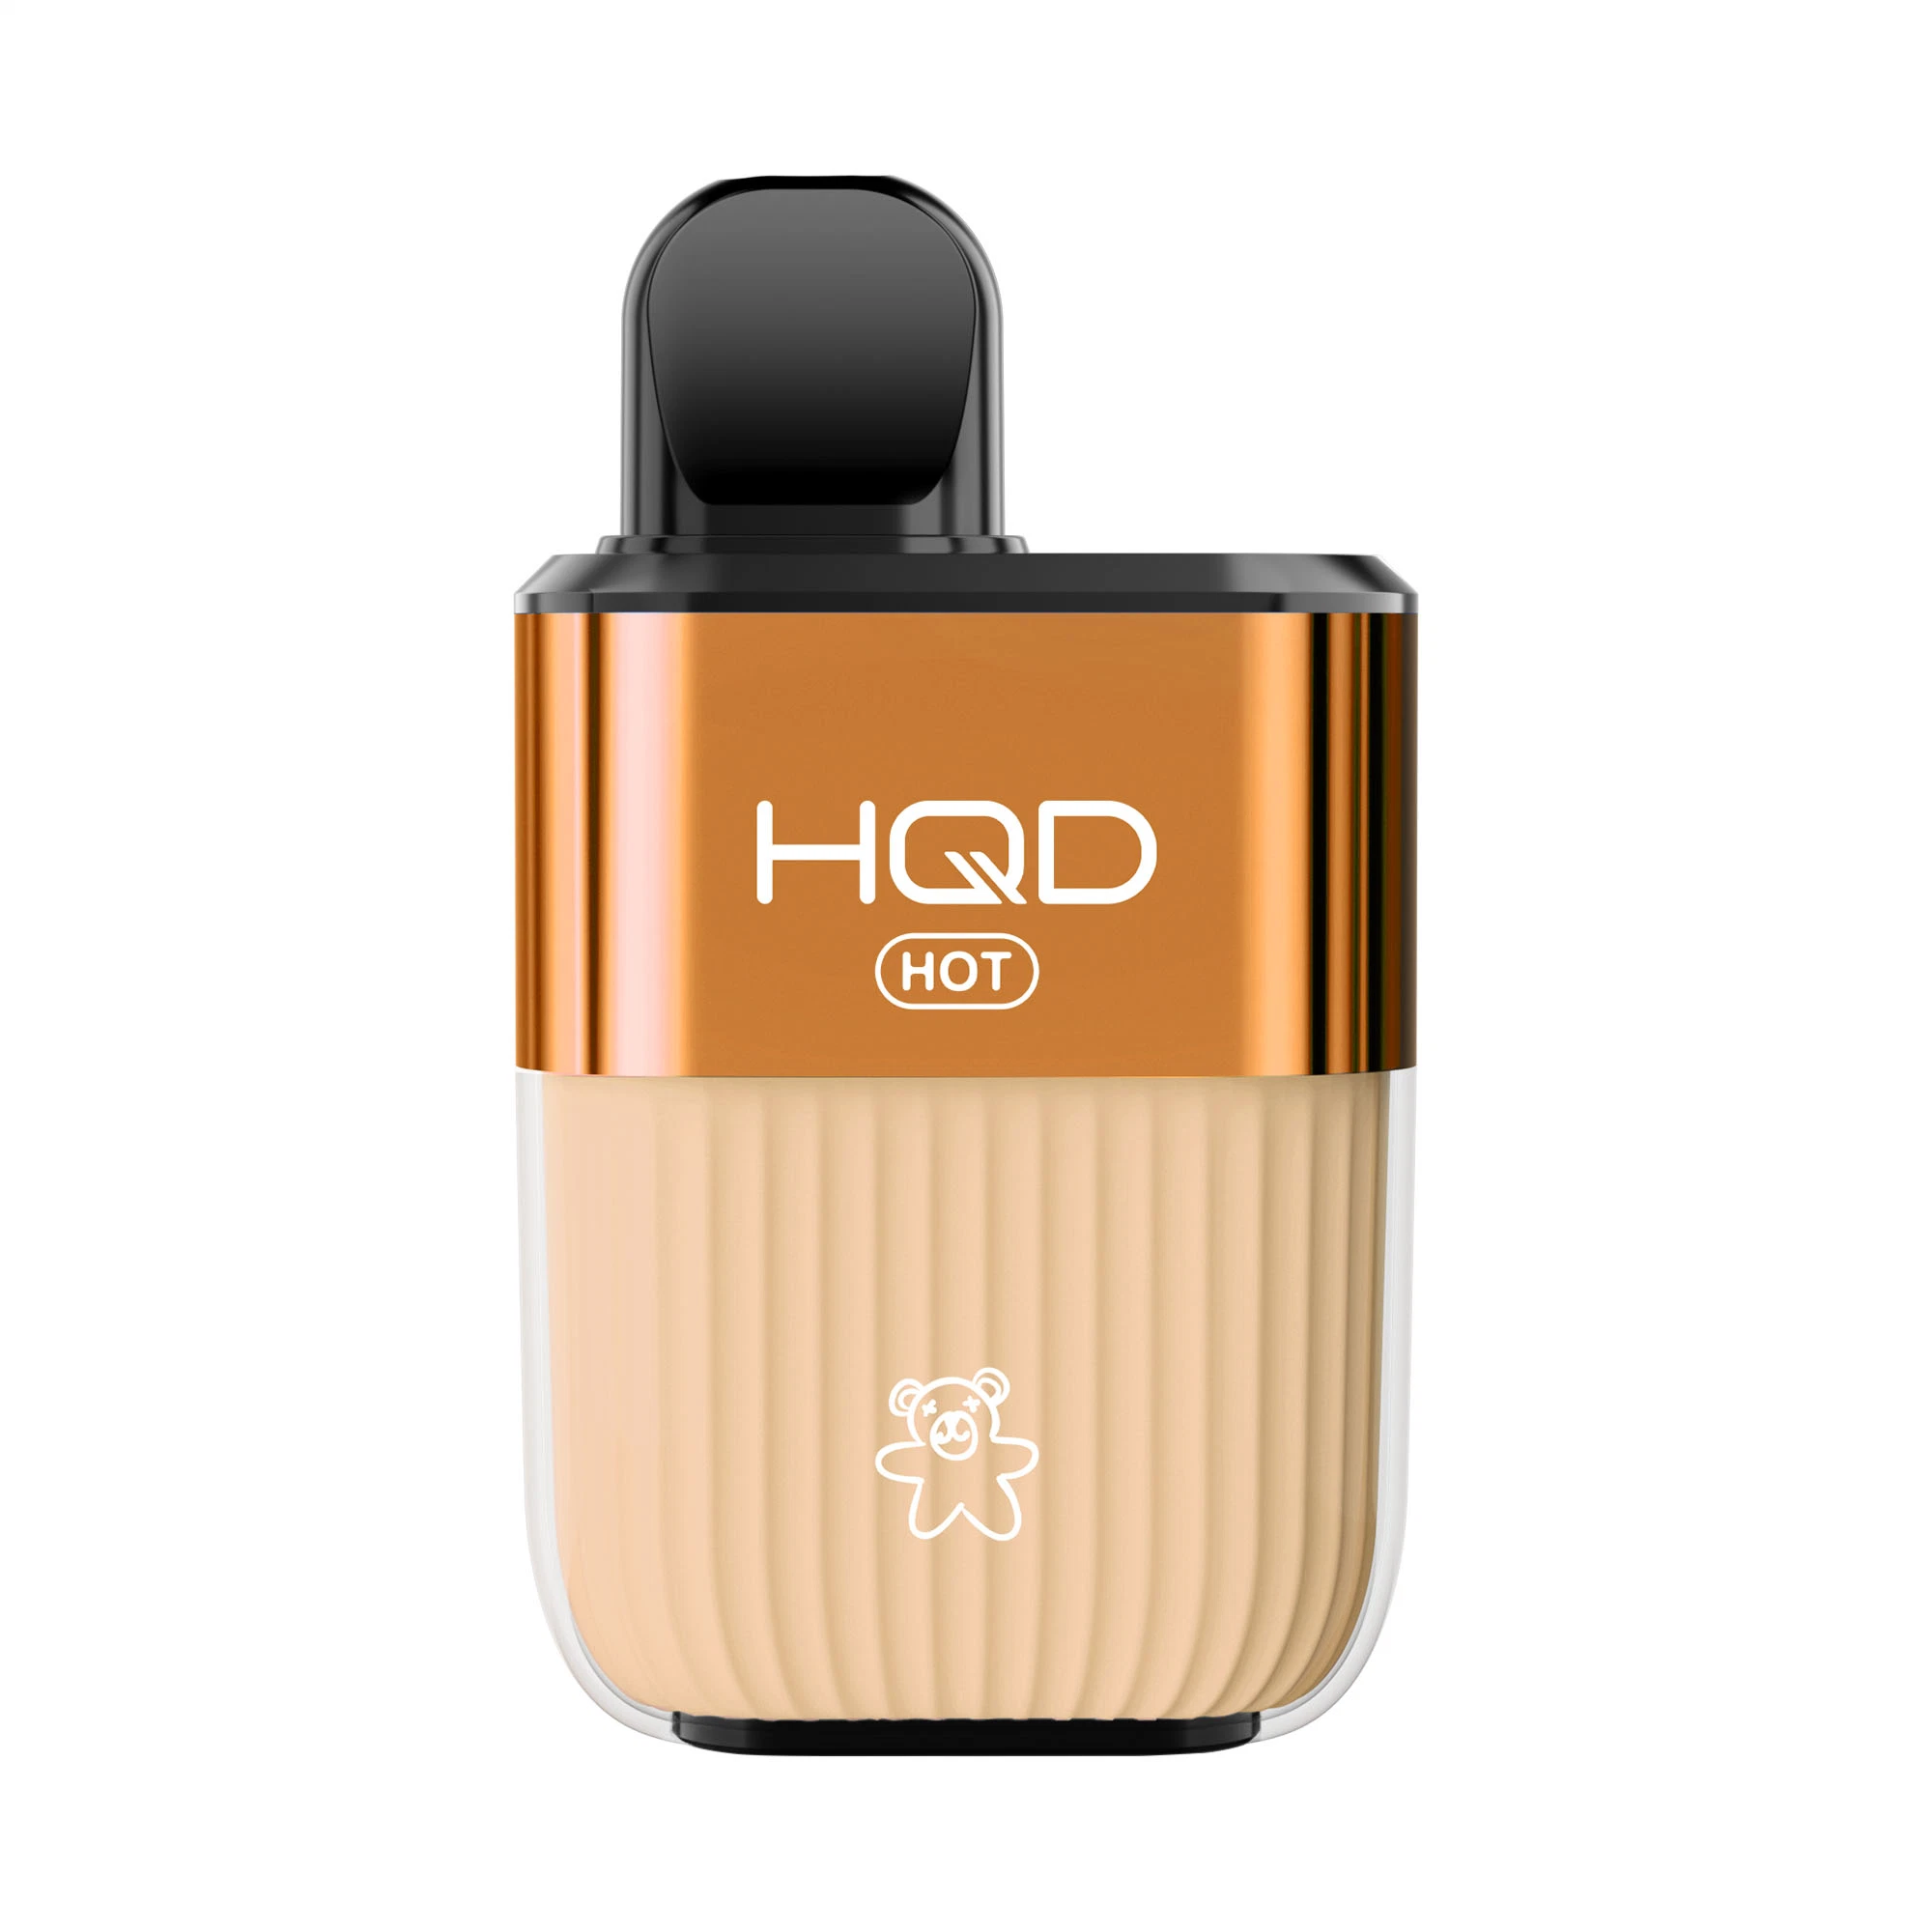 Hqd pilas recargables Producto Nuevo Vape H082-caliente 5000 inhalaciones con buena experiencia (más de 30 sabores)